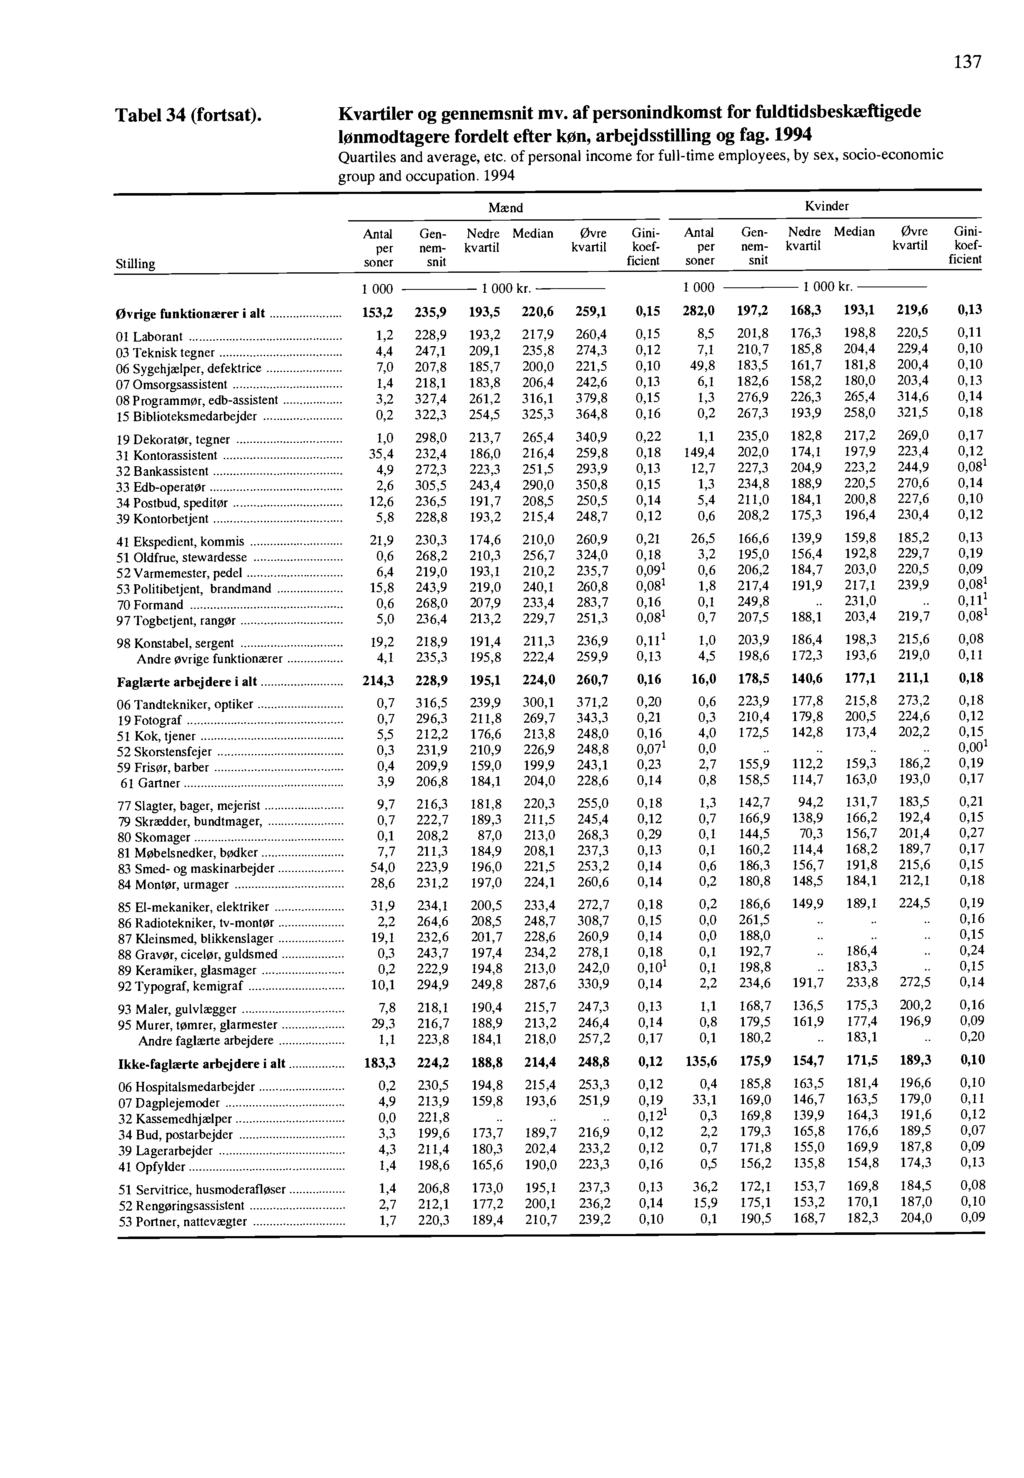 137 Tabel 34 (fortsat) Kvartiler og gennemsnit mv of personindkomst for fuldtidsbeskæftigede lonmodtagere fordelt efter Icon, arbejdsstilling og fag 1994 Quartiles and average, etc of personal income